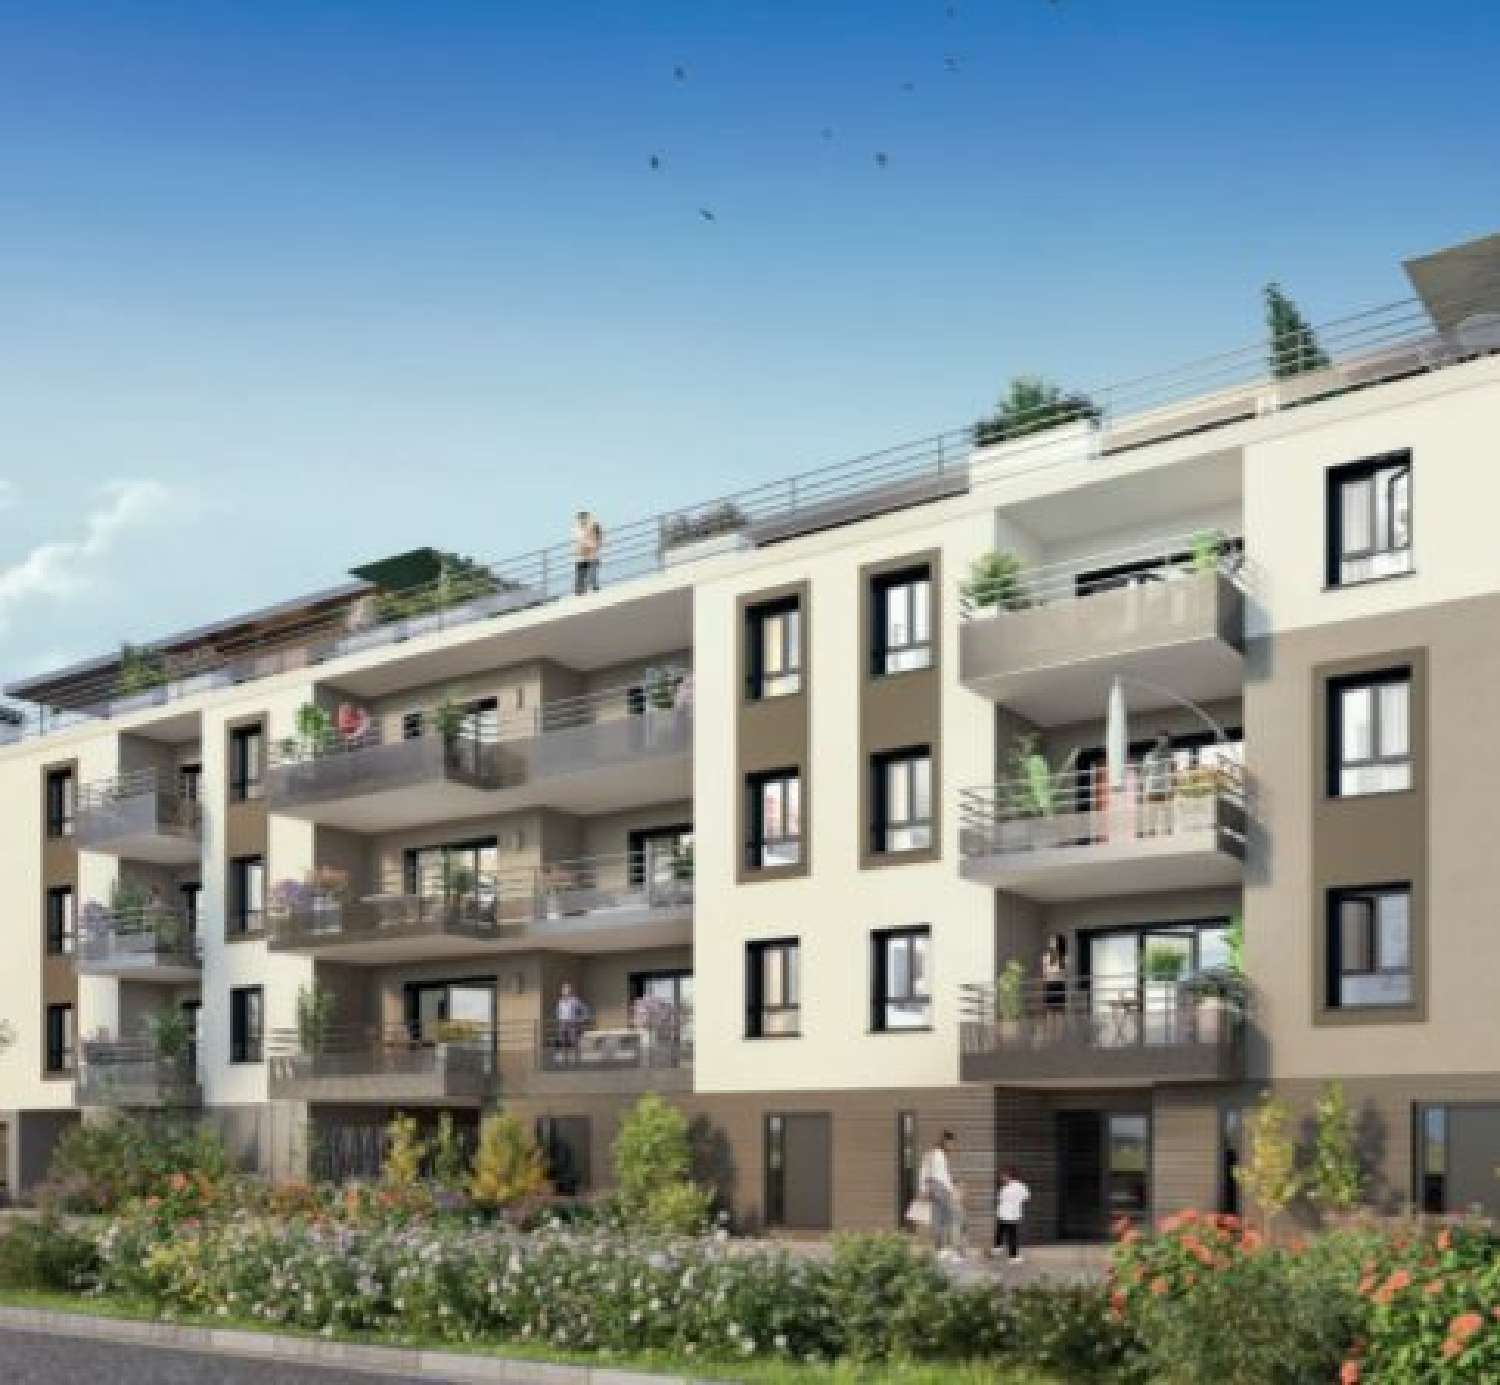 Aix-les-Bains Savoie Wohnung/ Apartment Bild 6814454